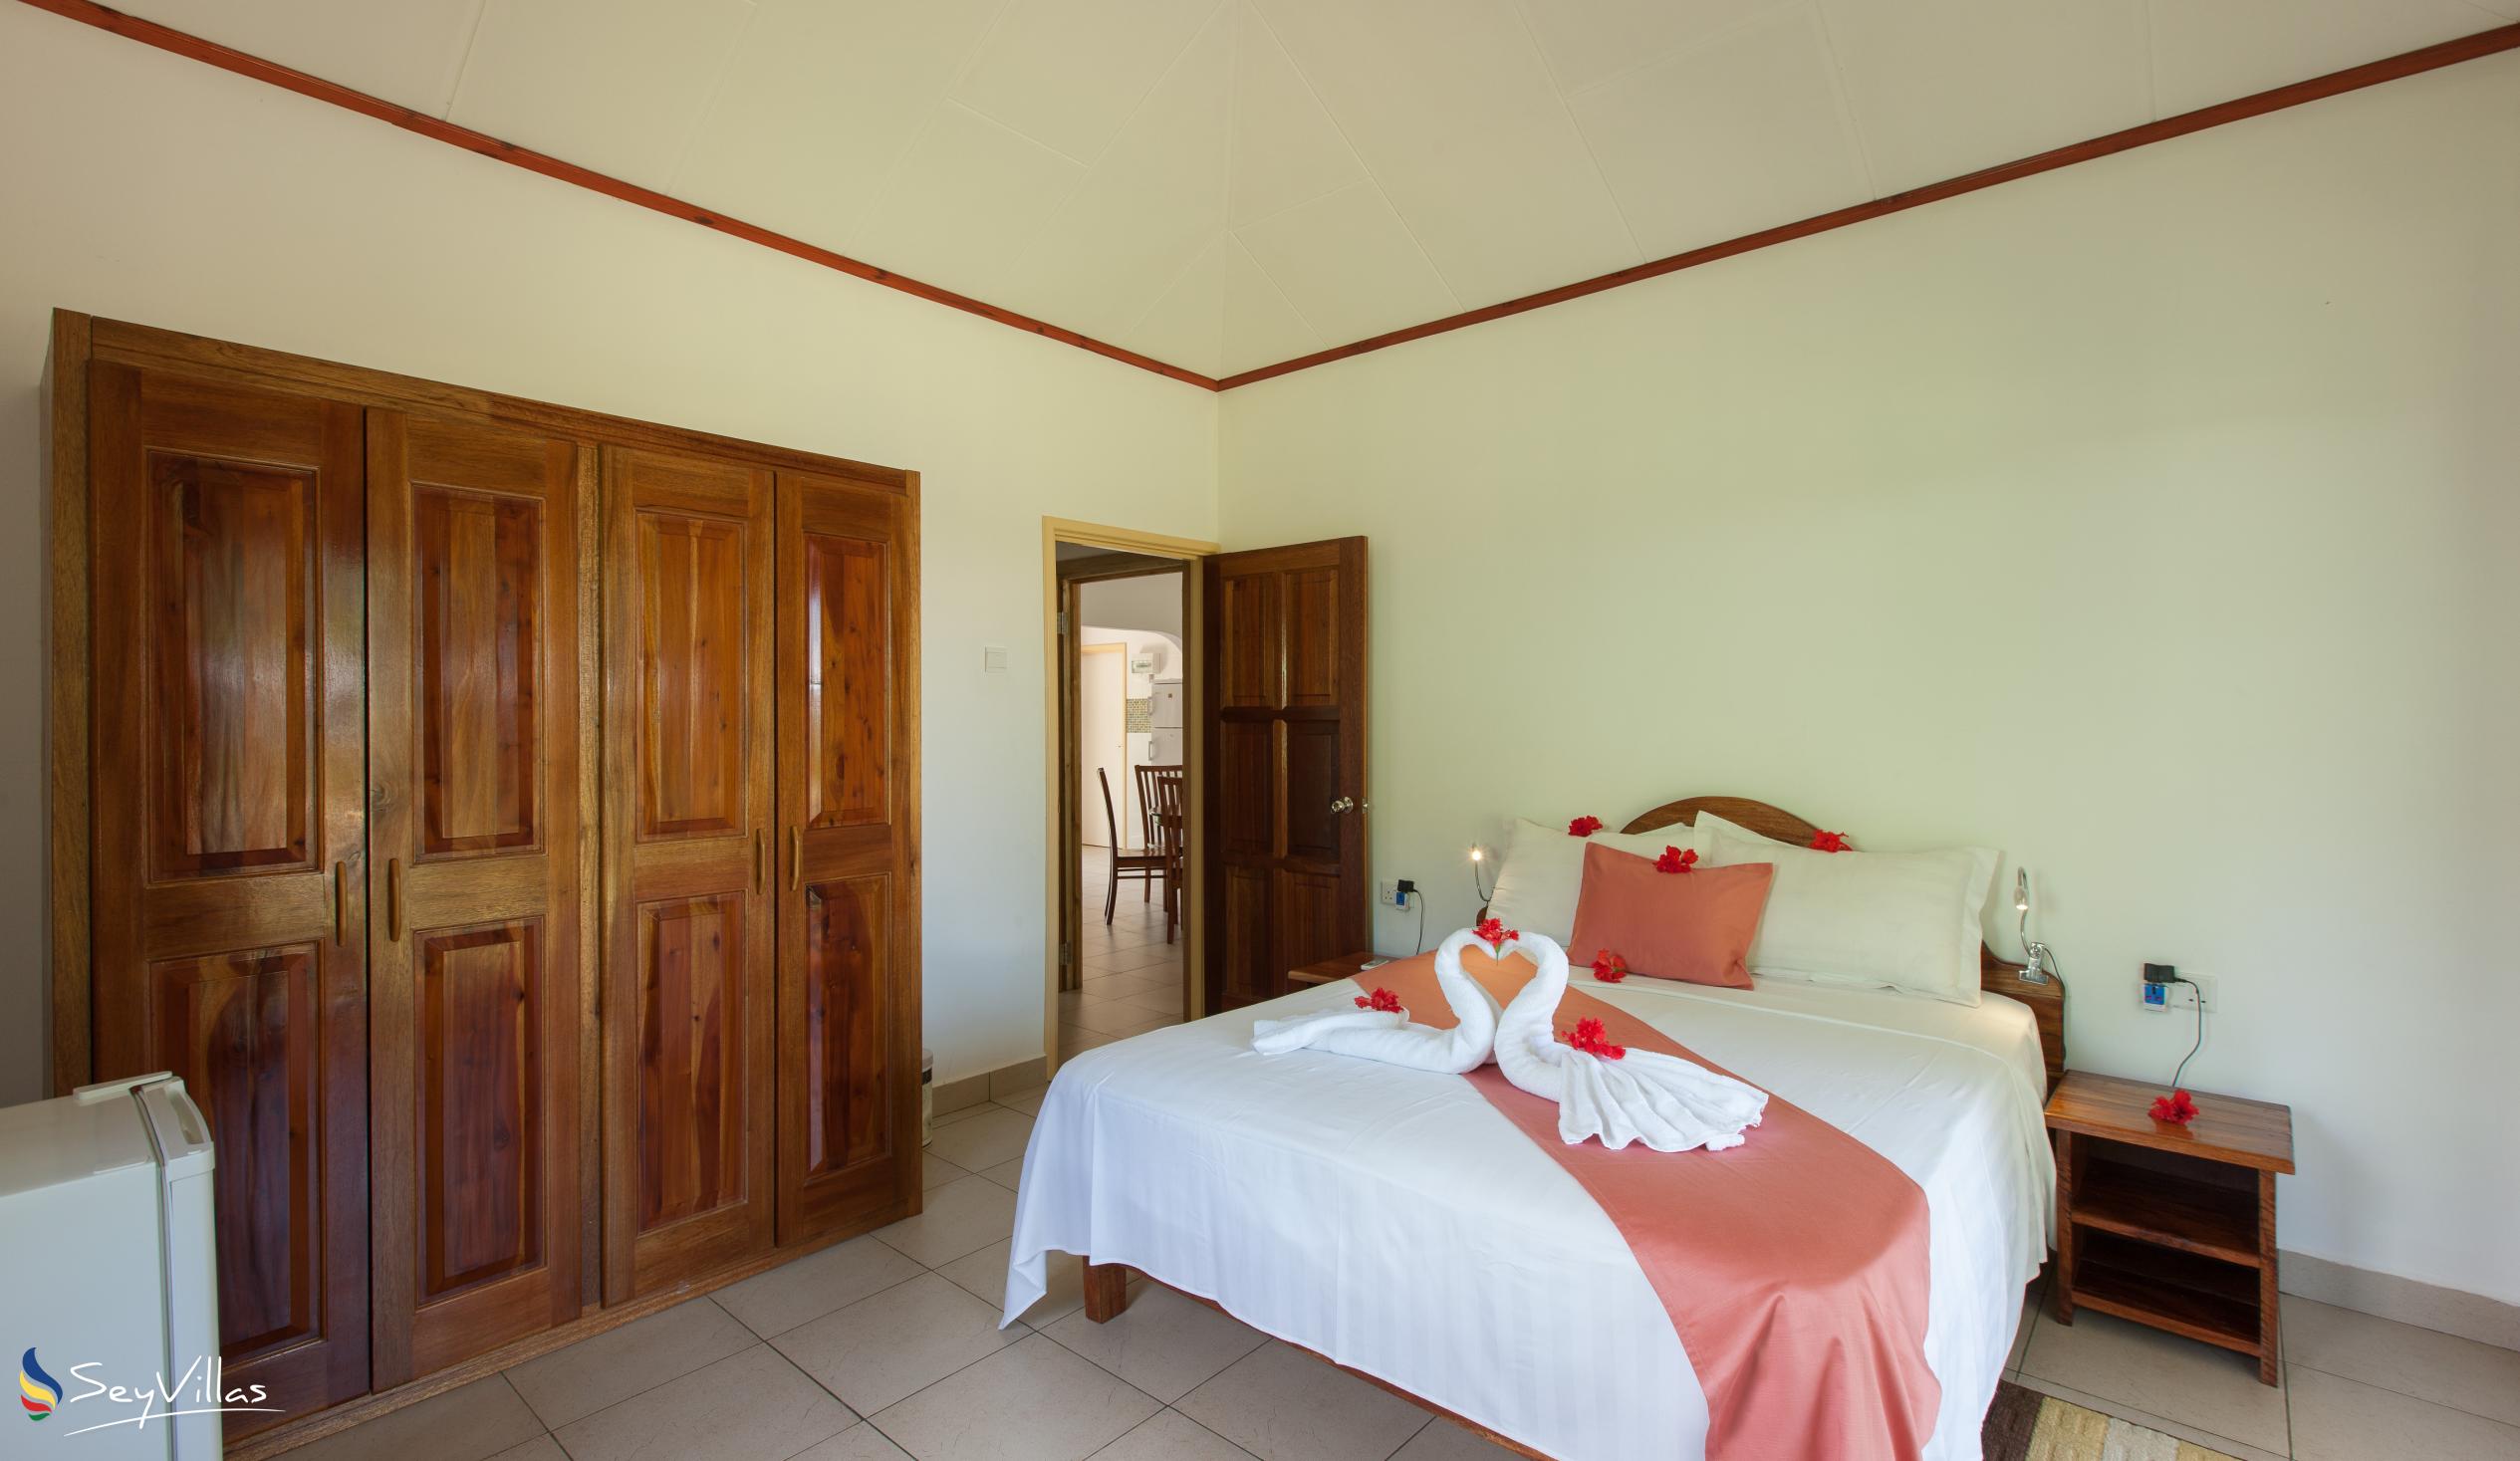 Foto 27: Hostellerie La Digue - Chalet mit 3 Schlafzimmern - La Digue (Seychellen)